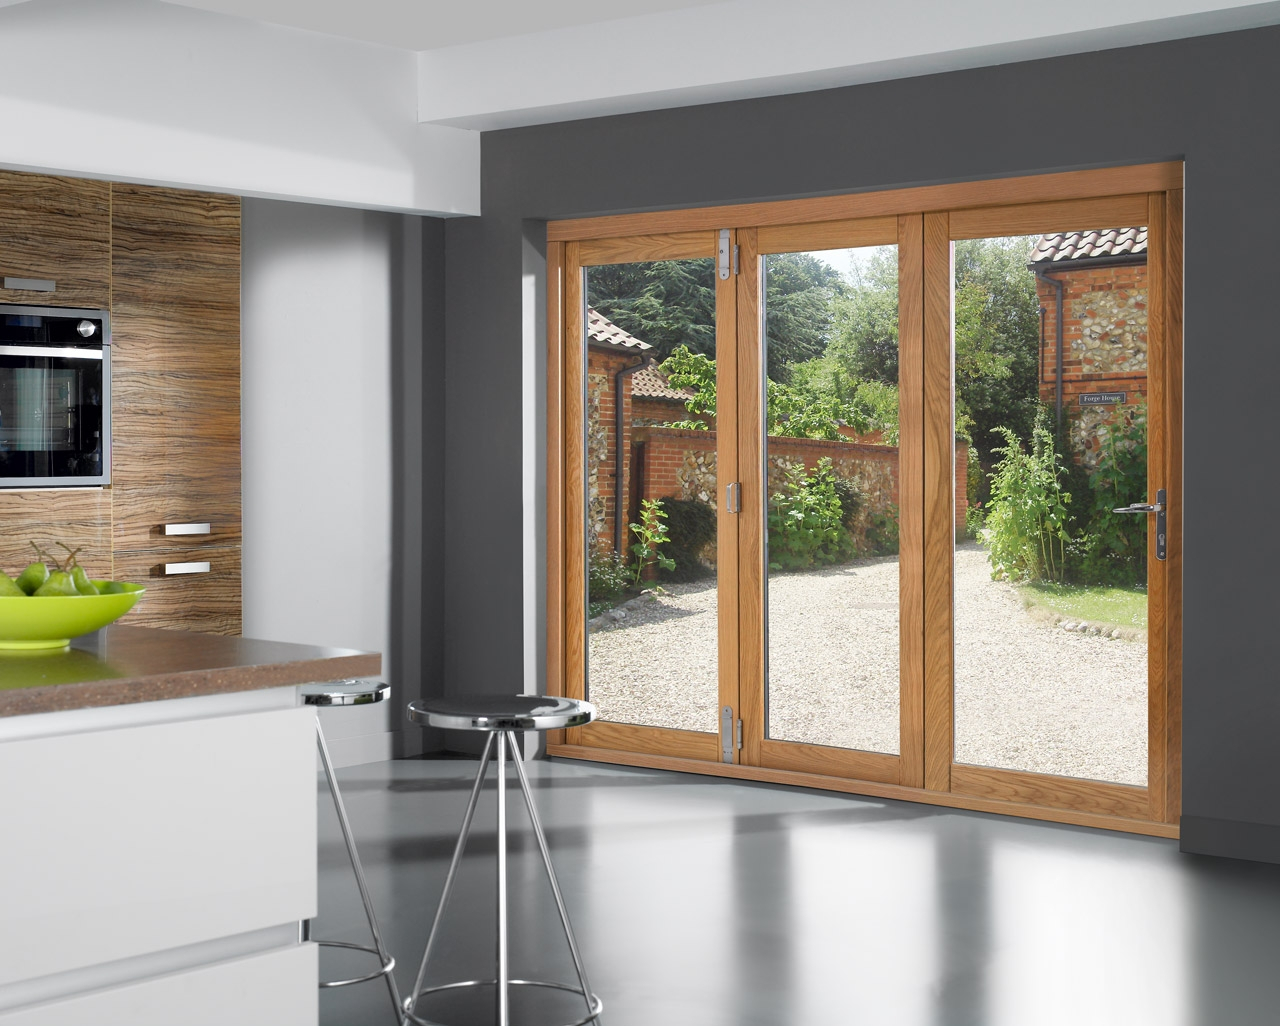 8 Ft Sliding Glass Patio Doors Doors Ideas in proportions 1280 X 1026